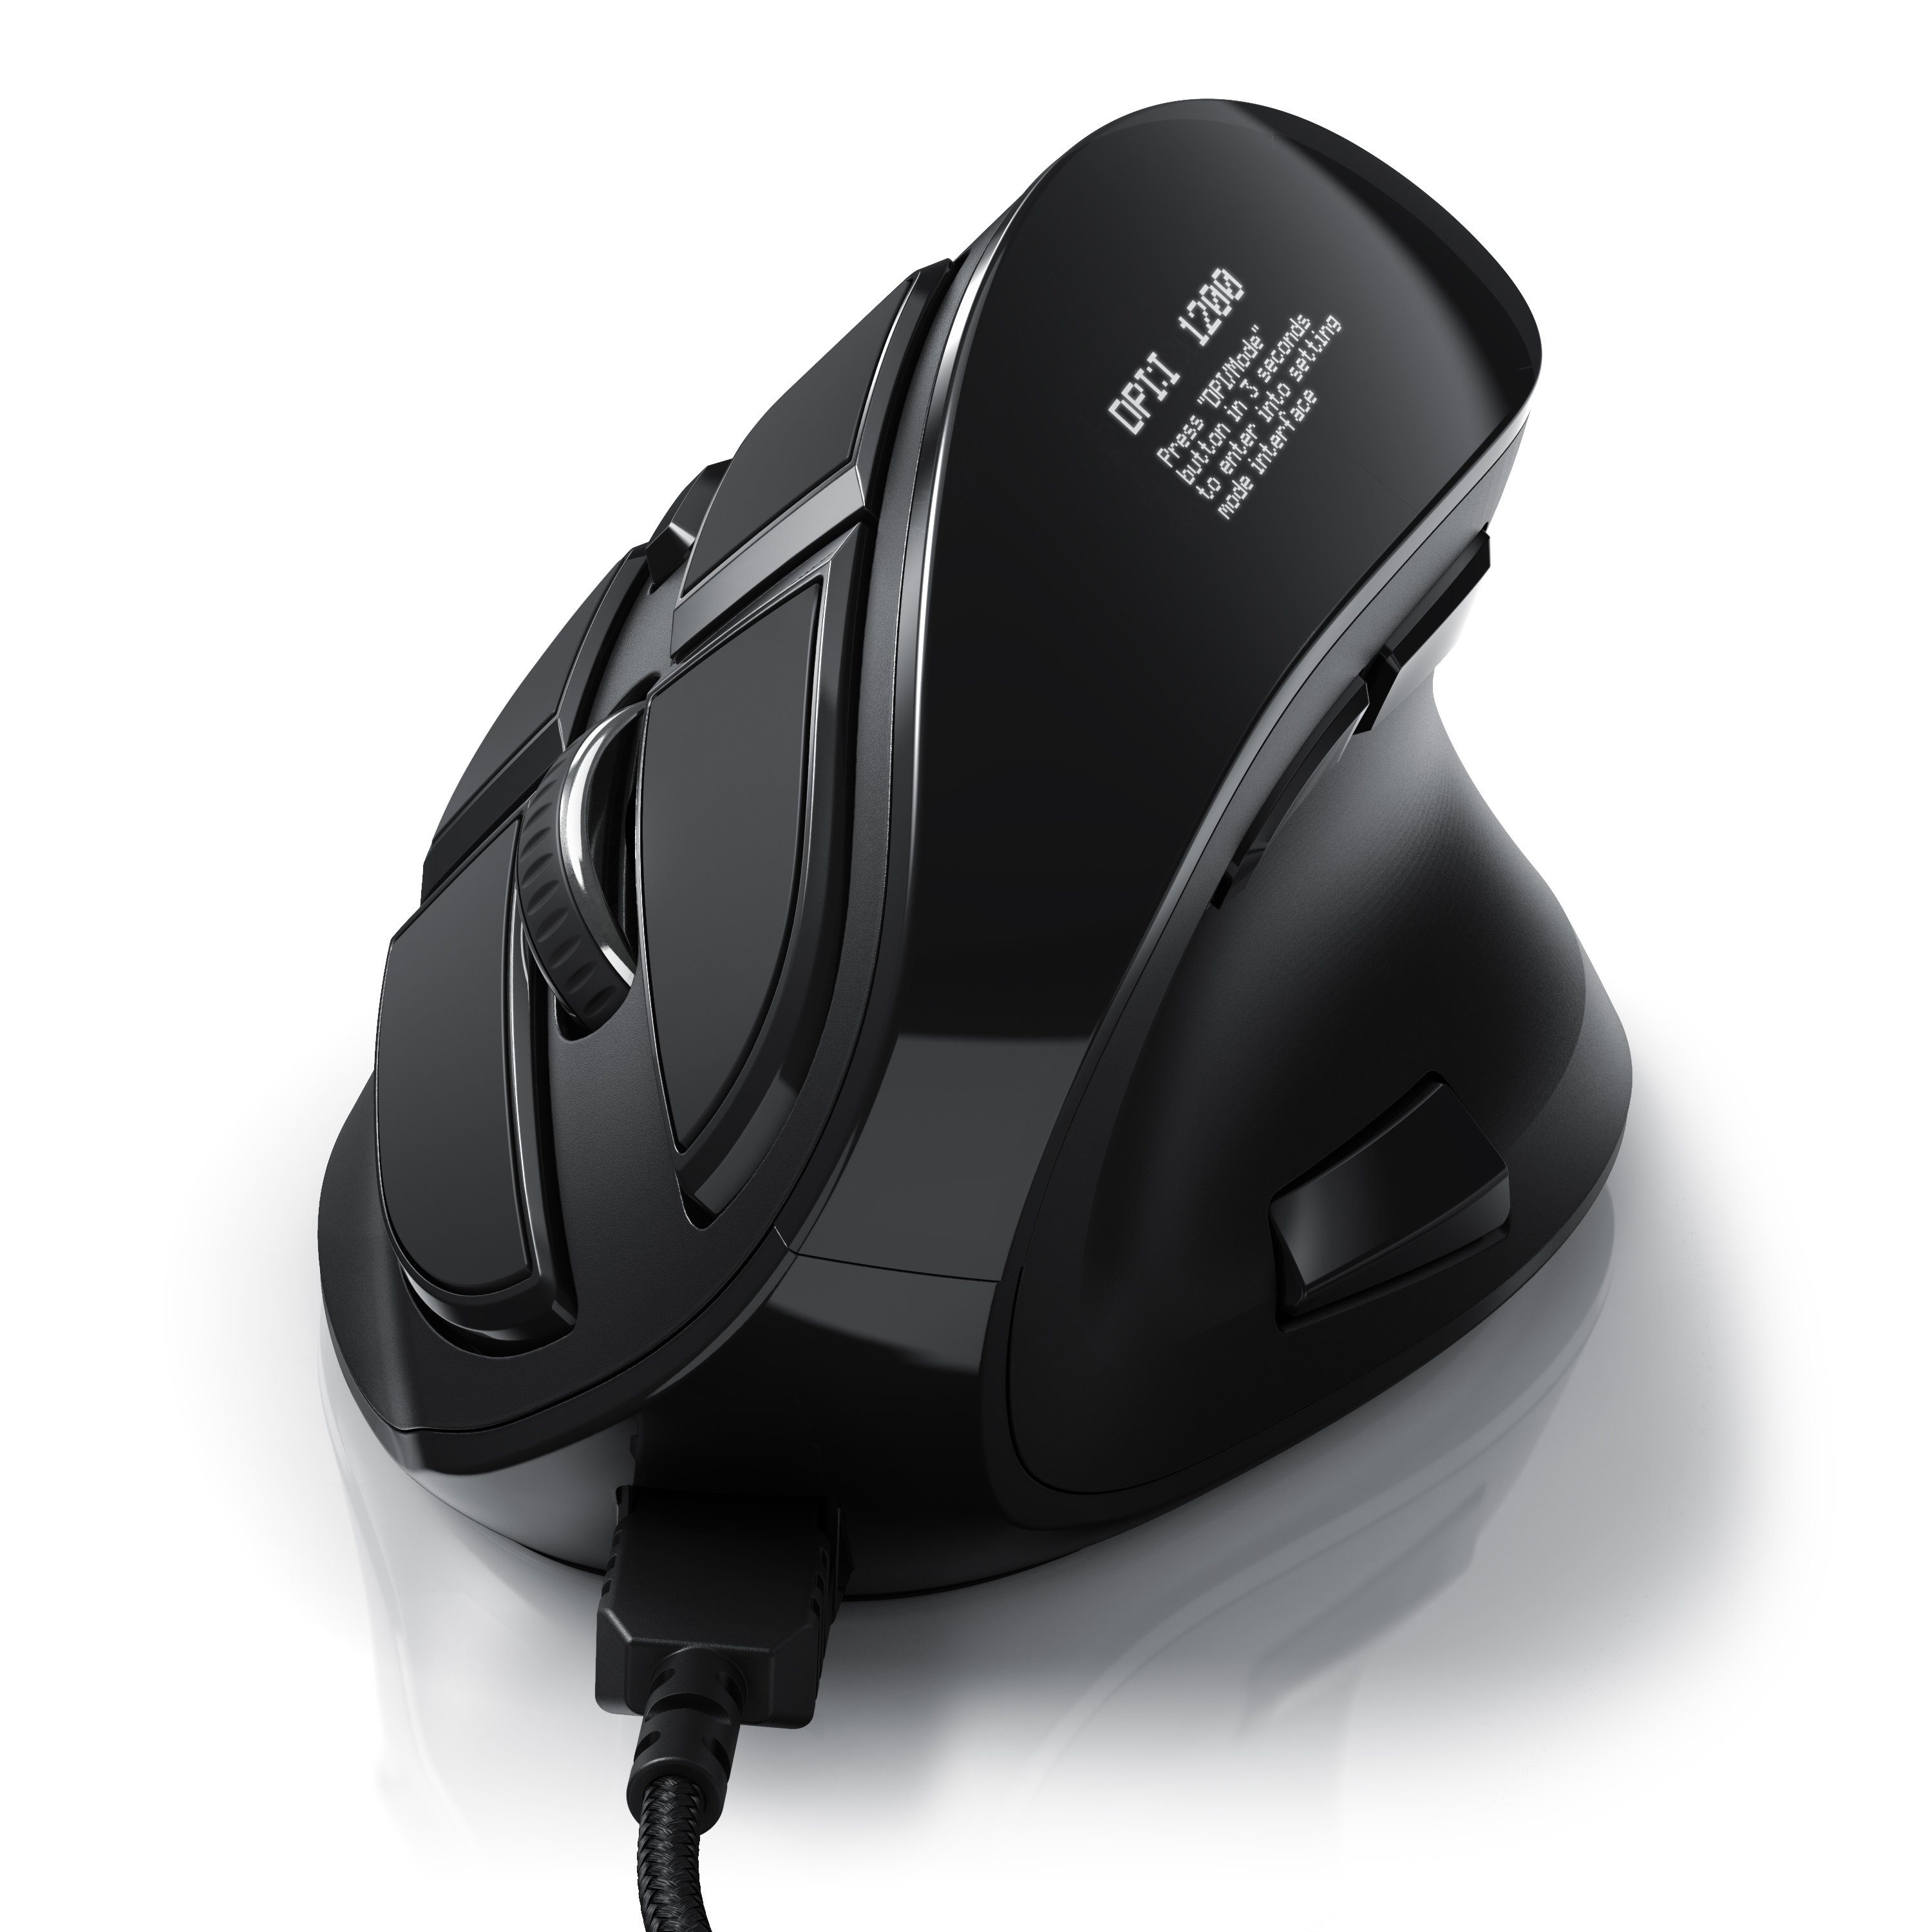 mit kabelgebunden CSL Maus Maus dpi, Tasten) Konfigurierbare ergonomische (kabelgebunden, Vertikal 125 OLED-Display